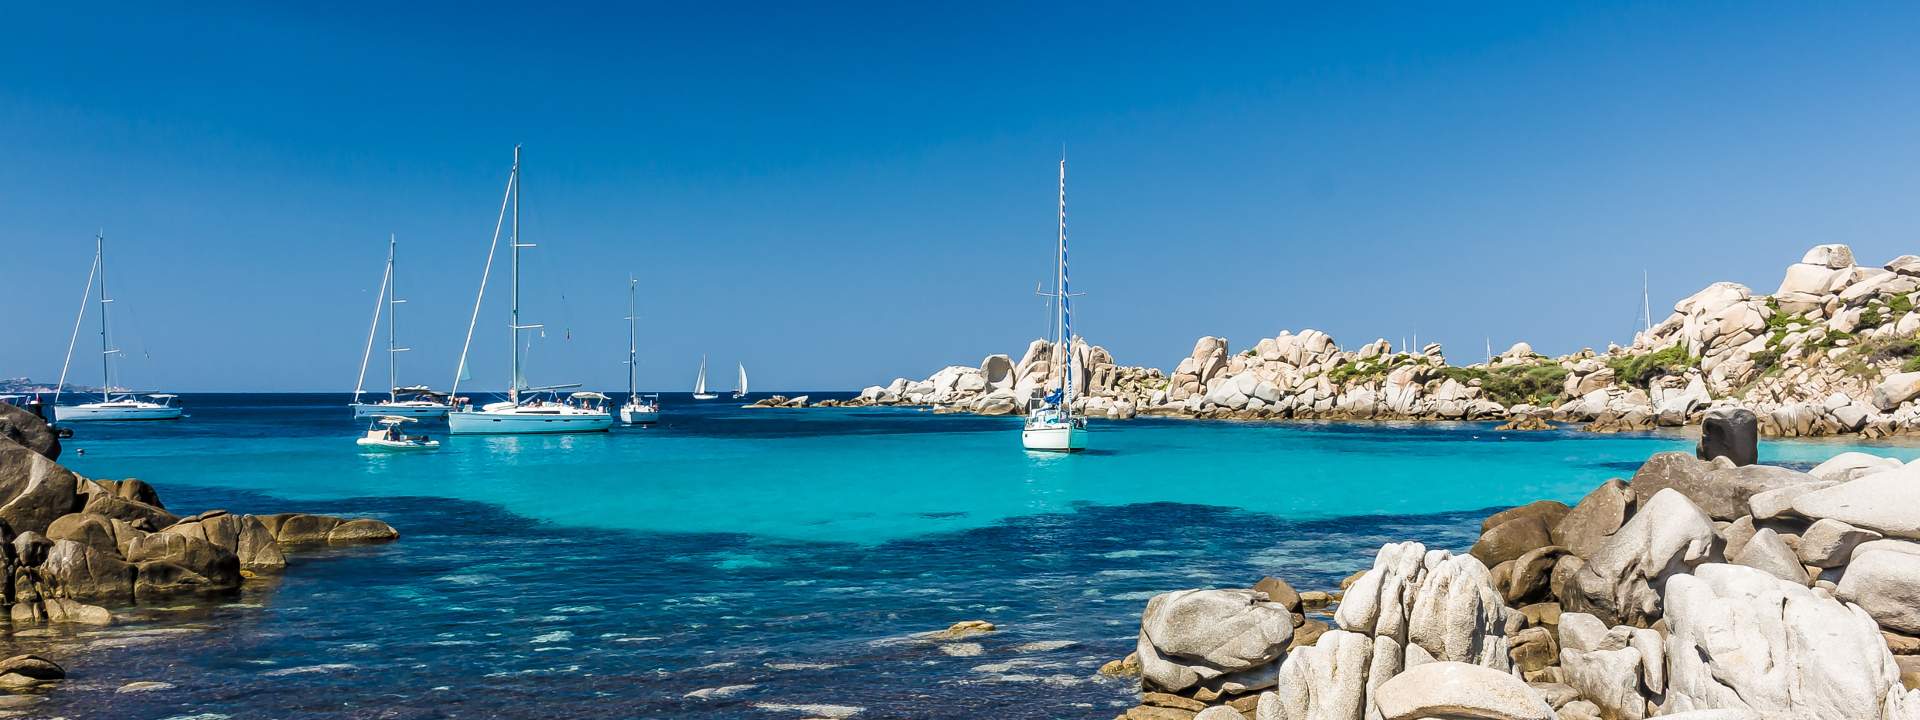 Les plus beaux mouillages de Corse & Sardaigne en catamaran